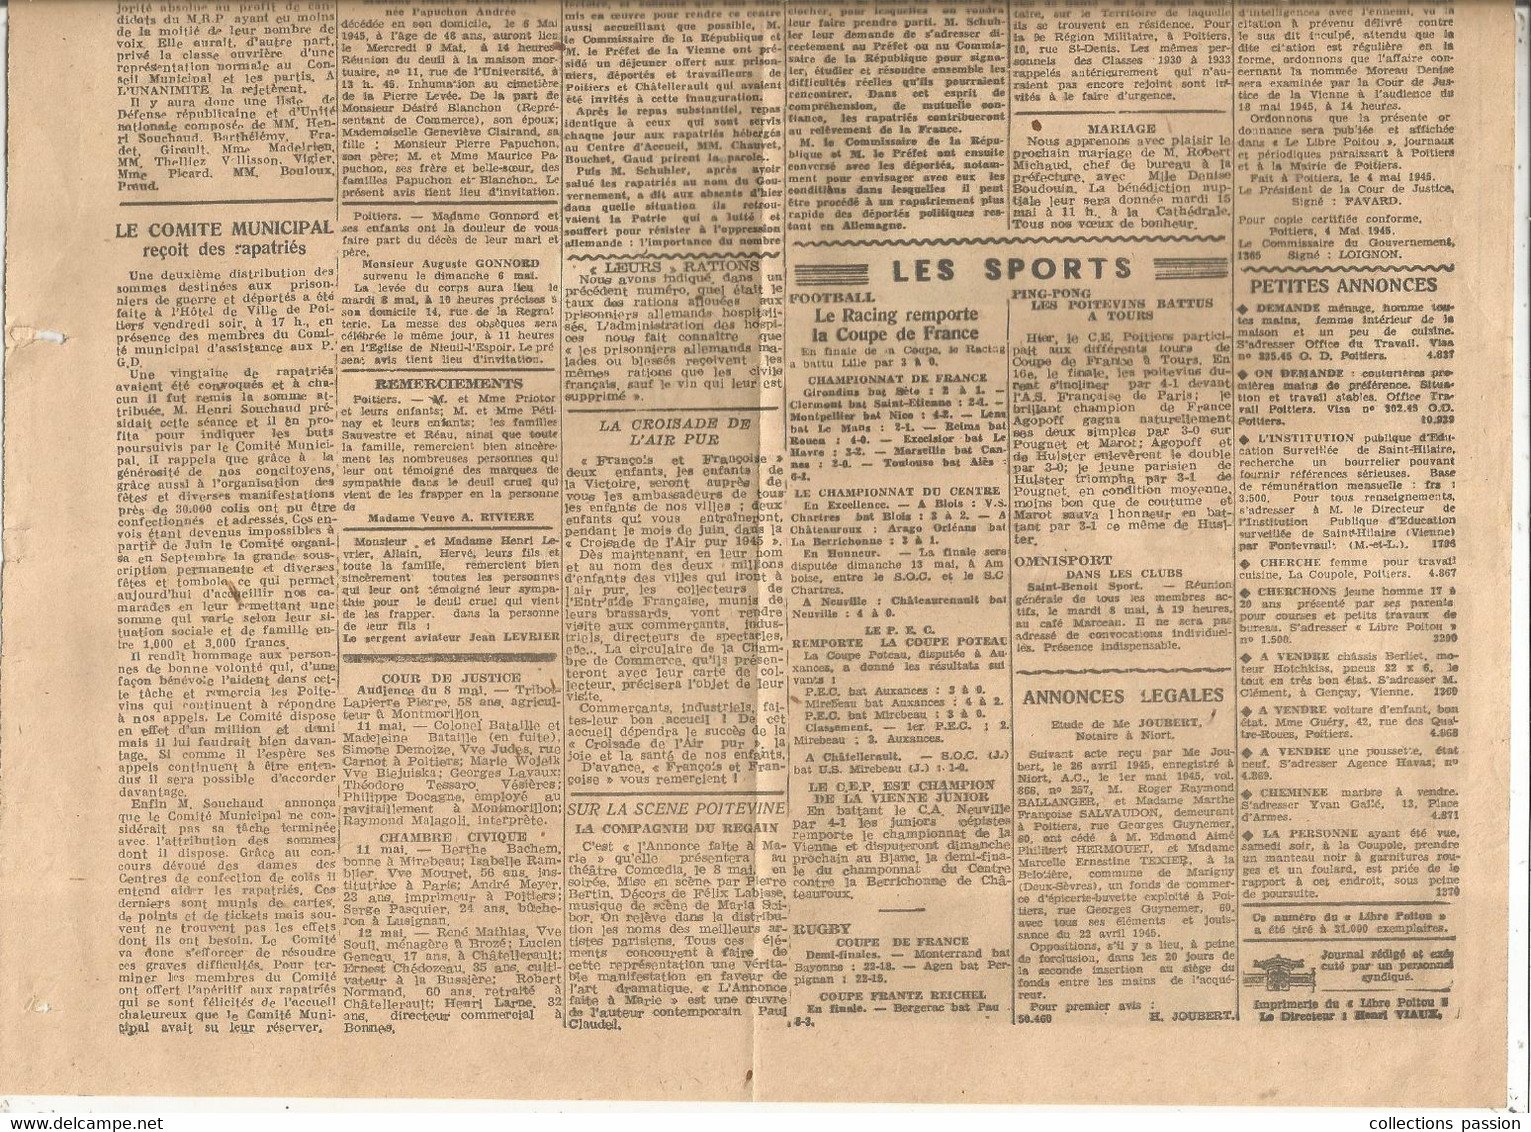 JC , Journal, LE LIBRE POITOU, 8 Mai 1945, CAPITULATION, Poitiers  , Frais Fr : Recommandé R2 : 7.00 E - Sonstige & Ohne Zuordnung